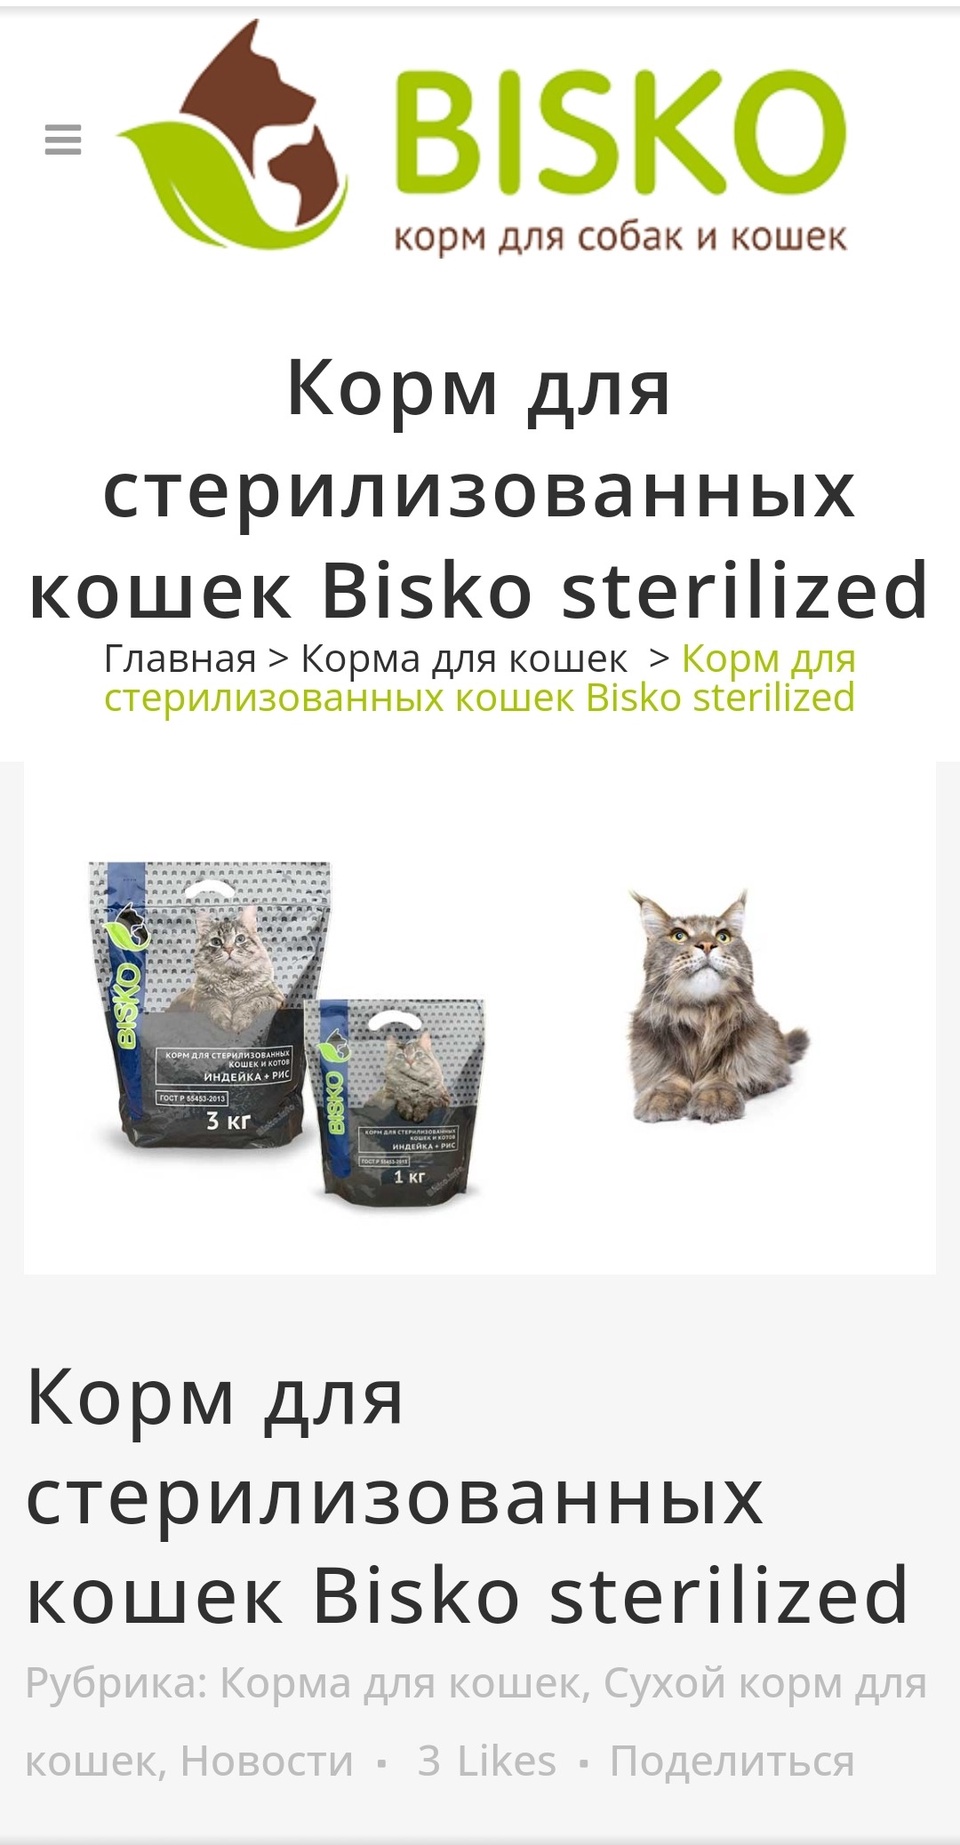 Биско для стерелизованных кошек с индейкой 1кг - 310 ₽, заказать онлайн.